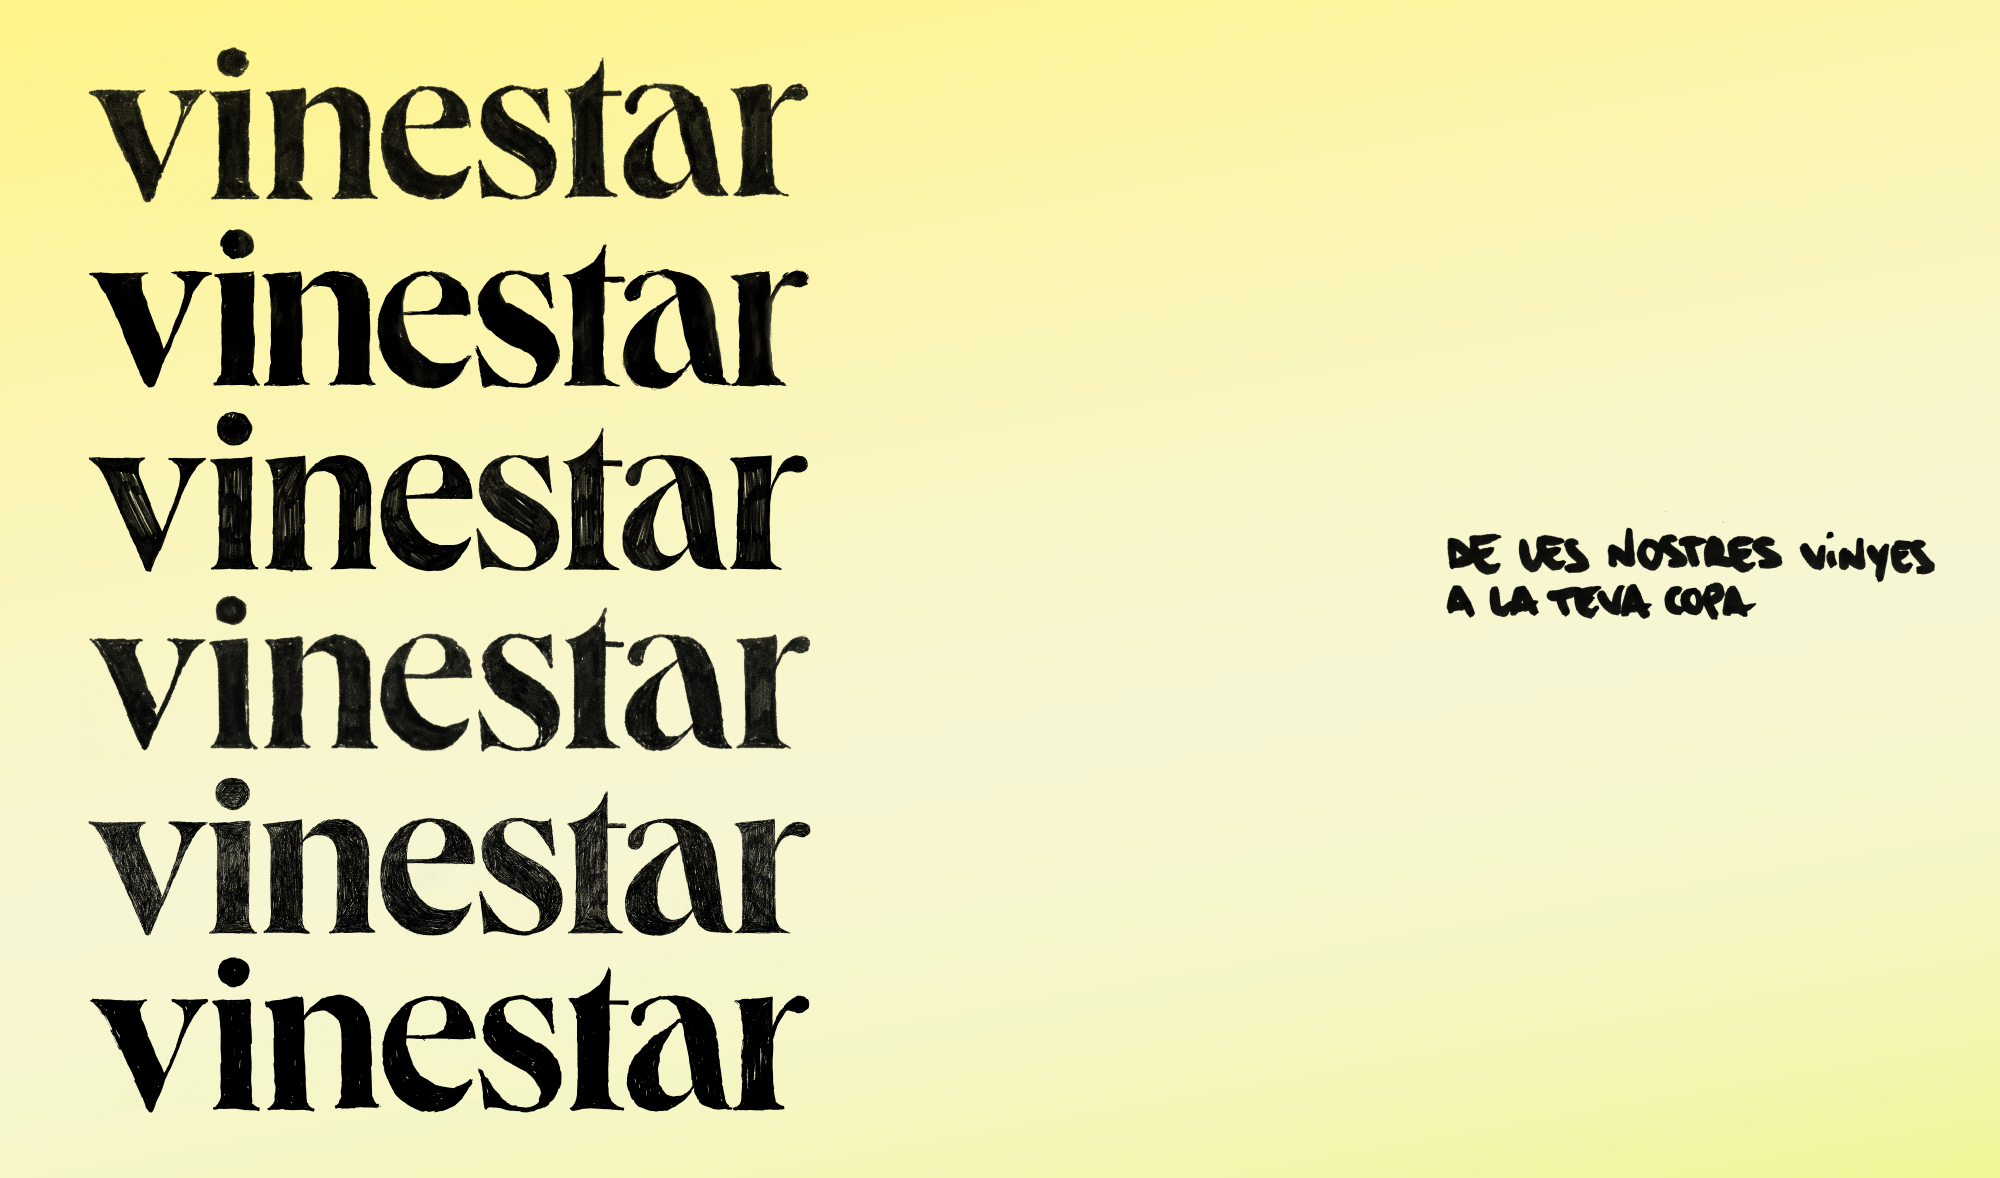 Variaciones del logo de Vinestar